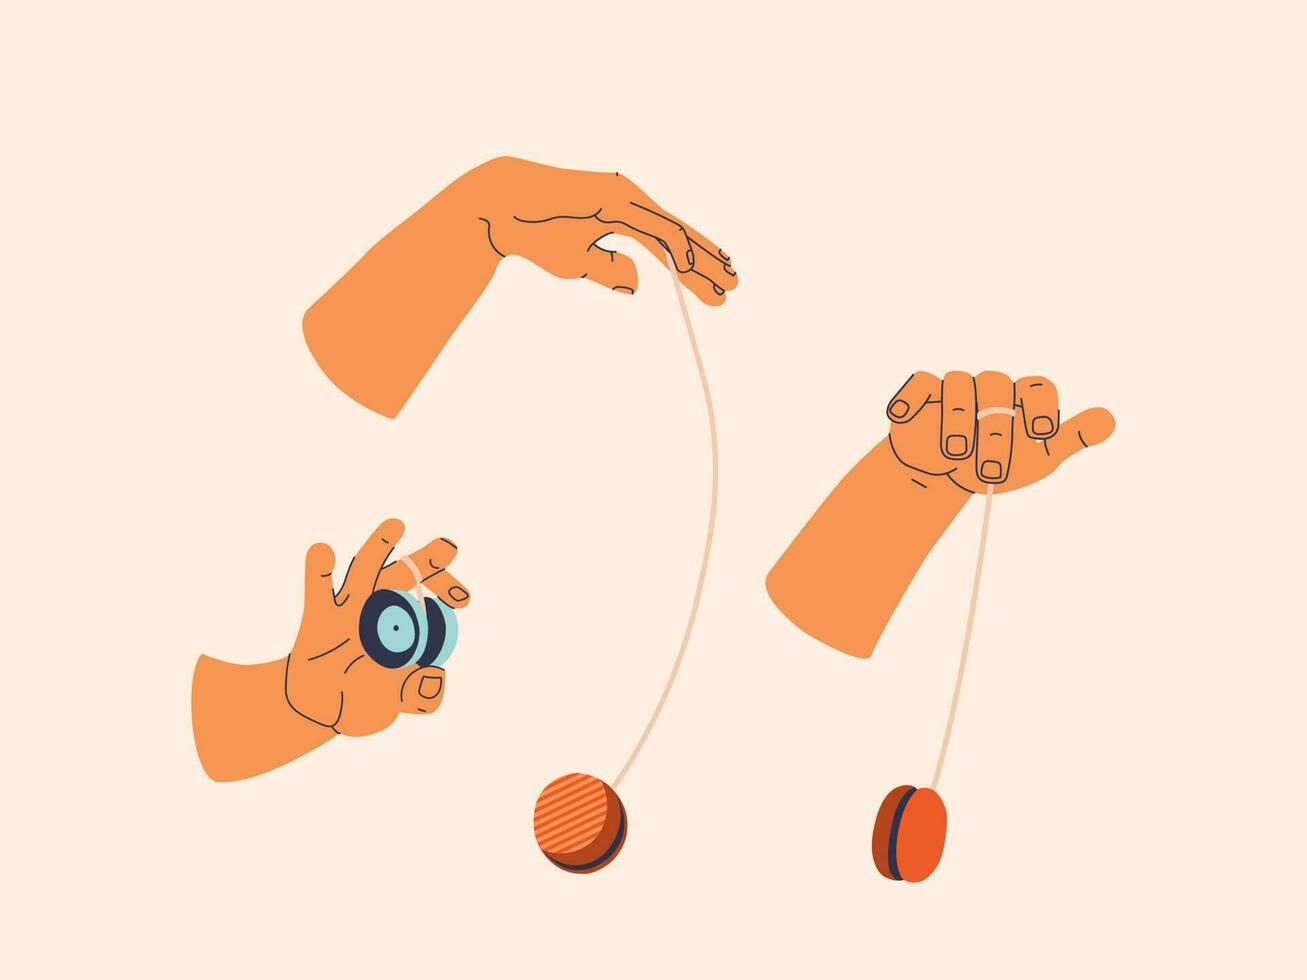 jojo leksak. uppsättning av händer i olika poser spelar jojo. vektor isolerat element.